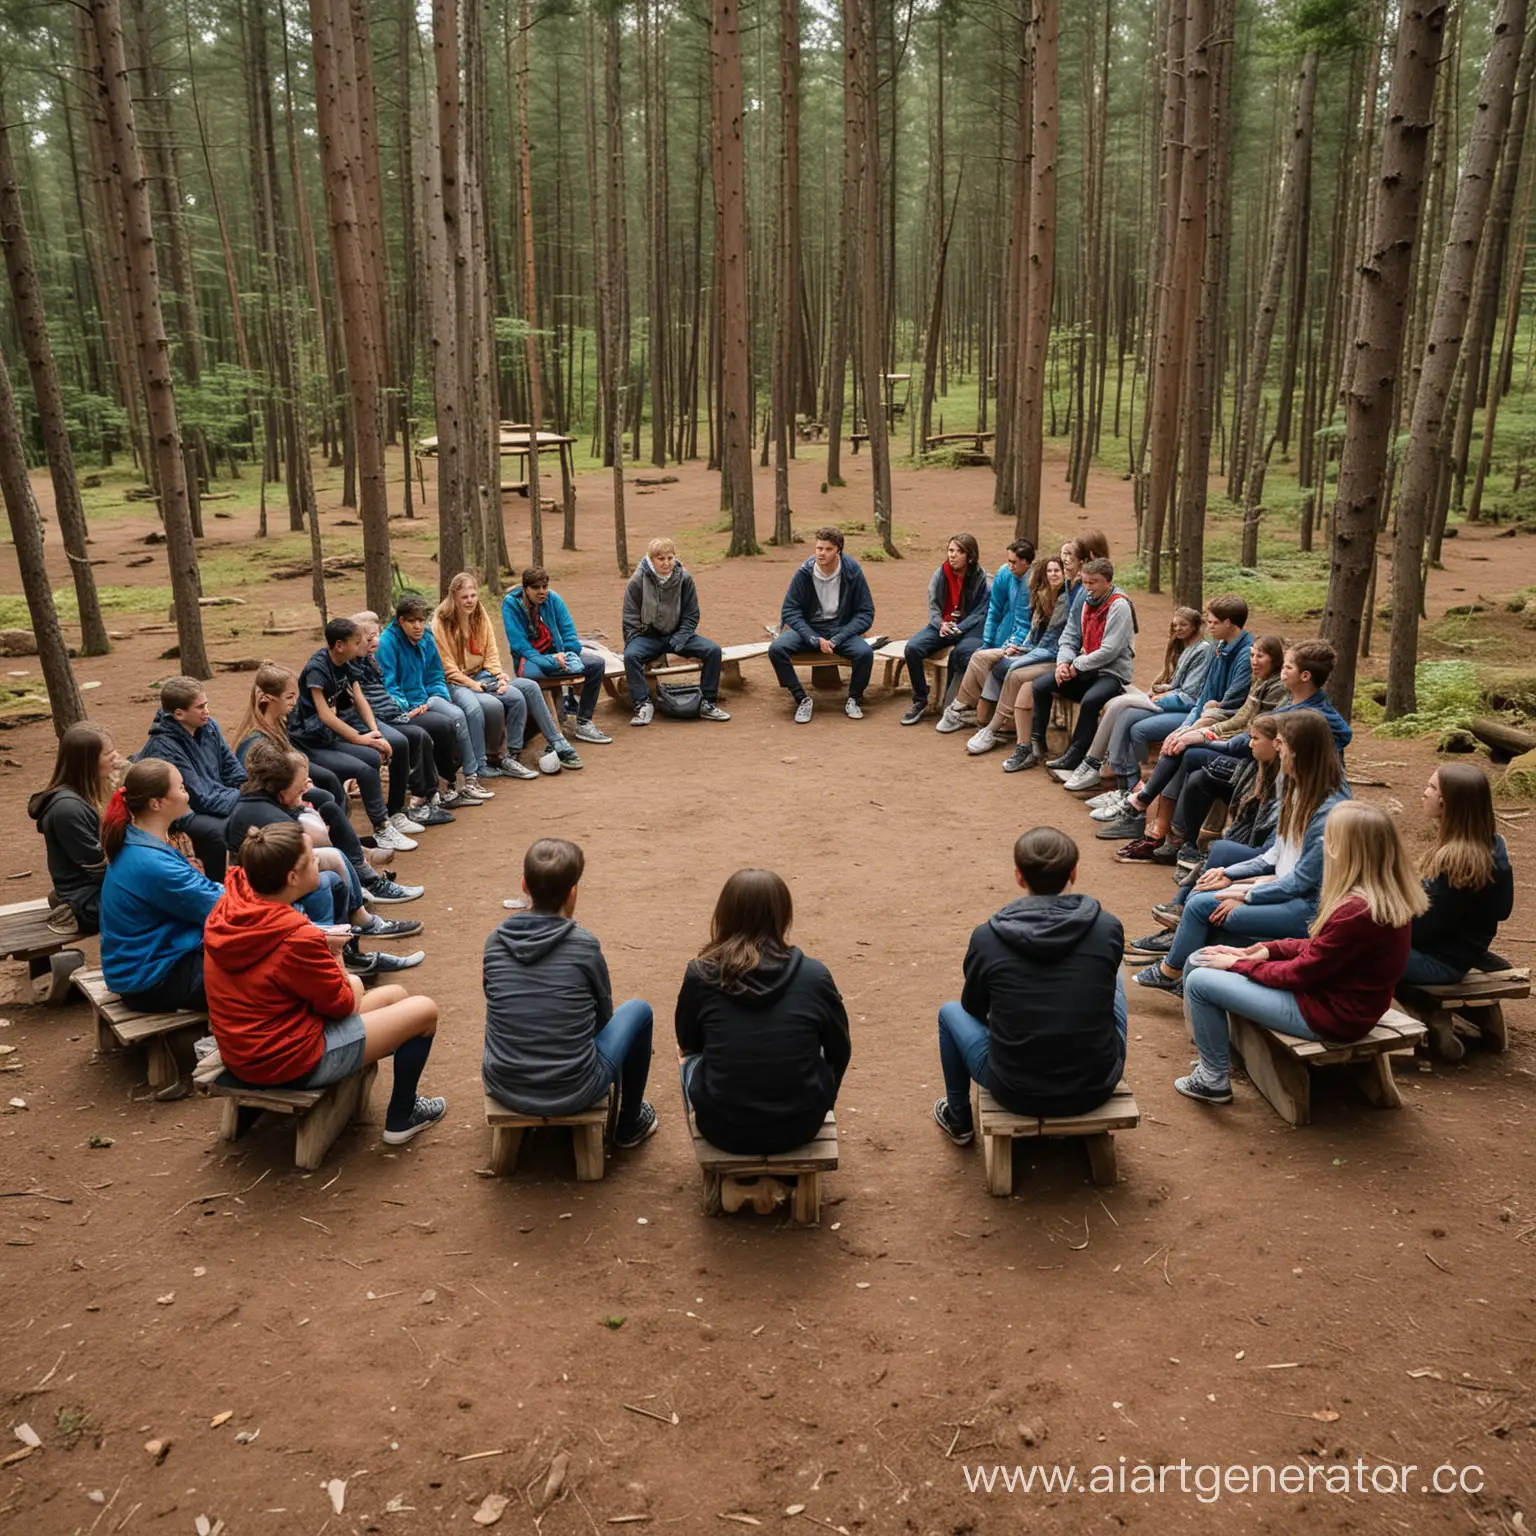 Сидят 20 подростков в кругу, рядом с ними 2 взрослыхвожатых. Подростки обсуждают идеи, сидят в лесу. У них идет активная активная дискуссия. Позади стоят деревянные домики